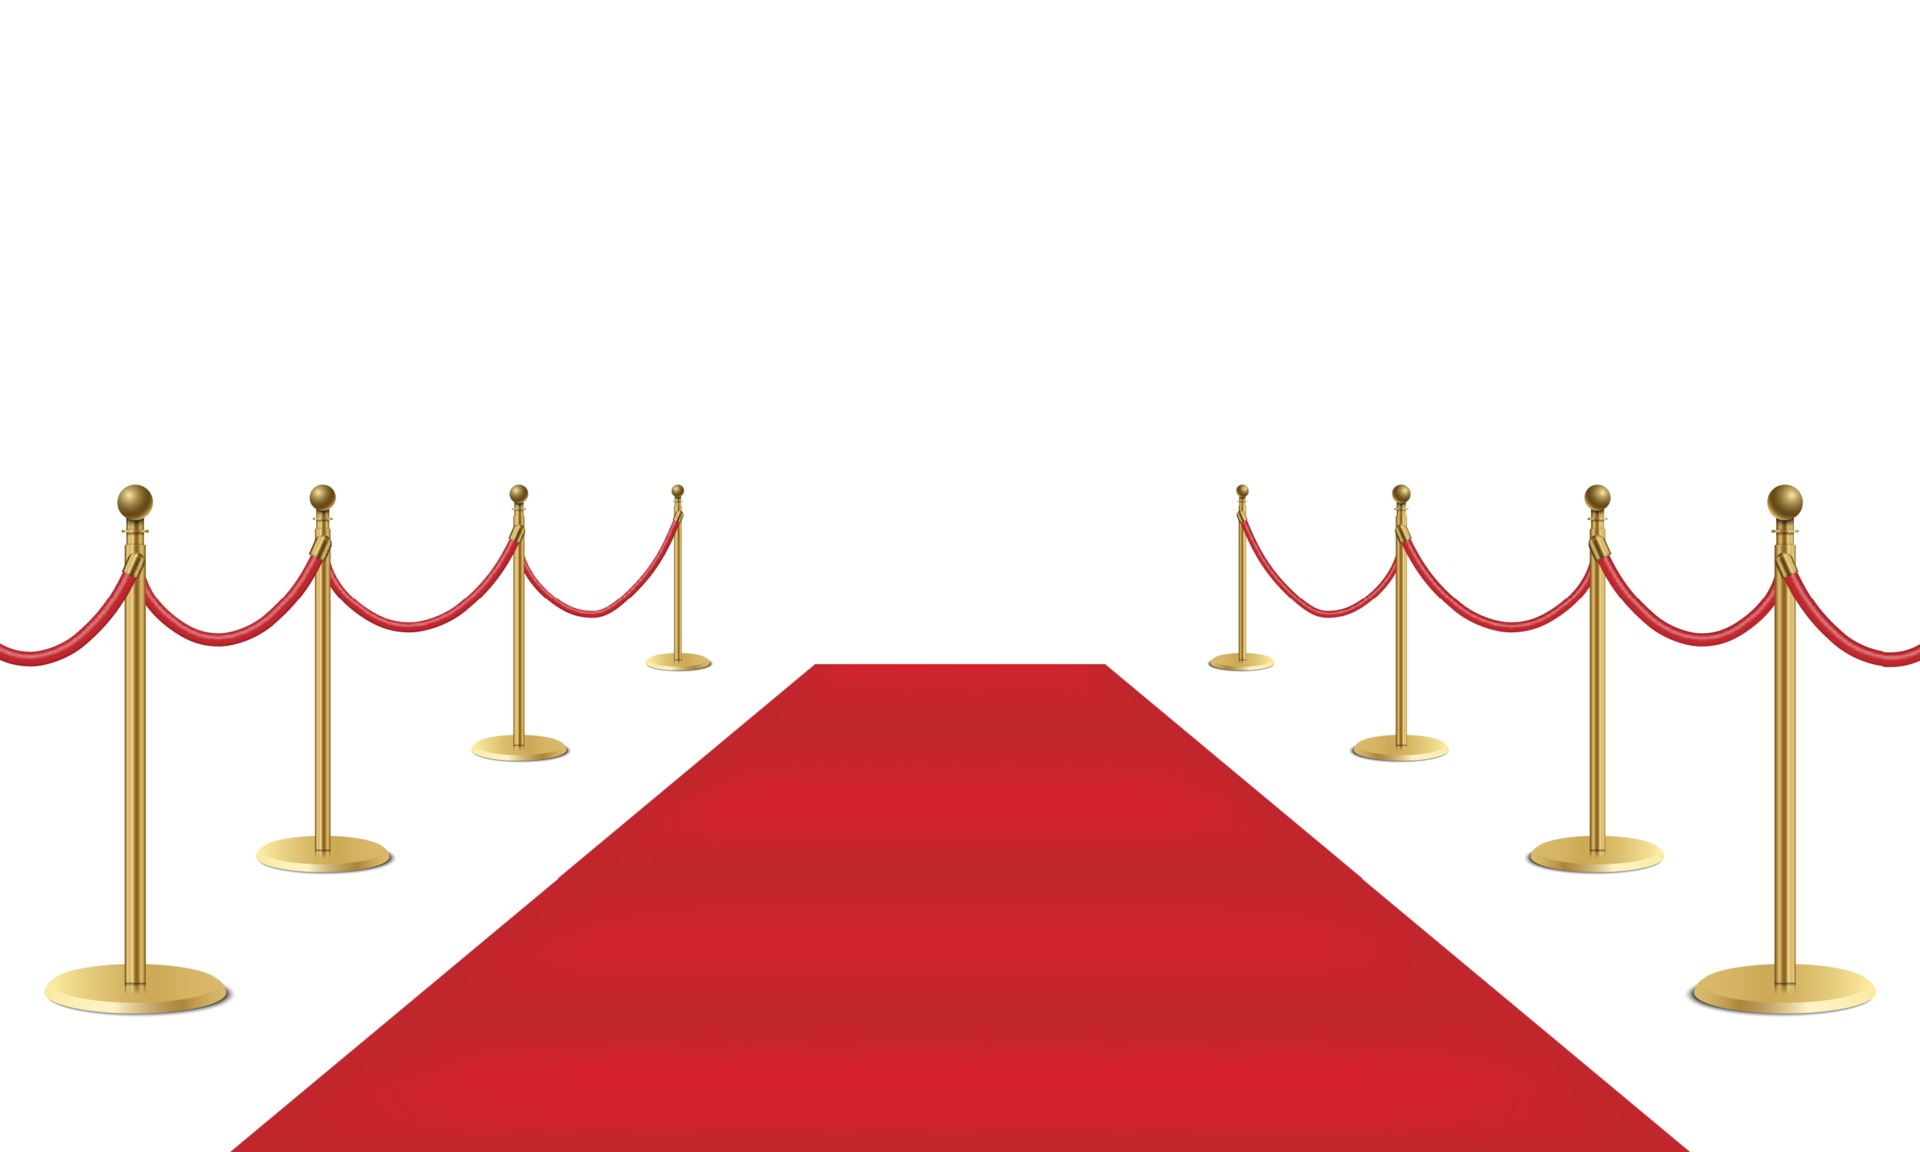 Với hình ảnh thảm đỏ sự kiện và rào chắn vàng trên nền trắng, bạn sẽ hiểu vì sao thảm đỏ được sử dụng cho các sự kiện quan trọng. Nền thảm đỏ tạo ra không gian trang trọng và đầy phong cách. Hãy xem hình này để cảm nhận được vẻ đẹp độc đáo của chiếc thảm đỏ này.